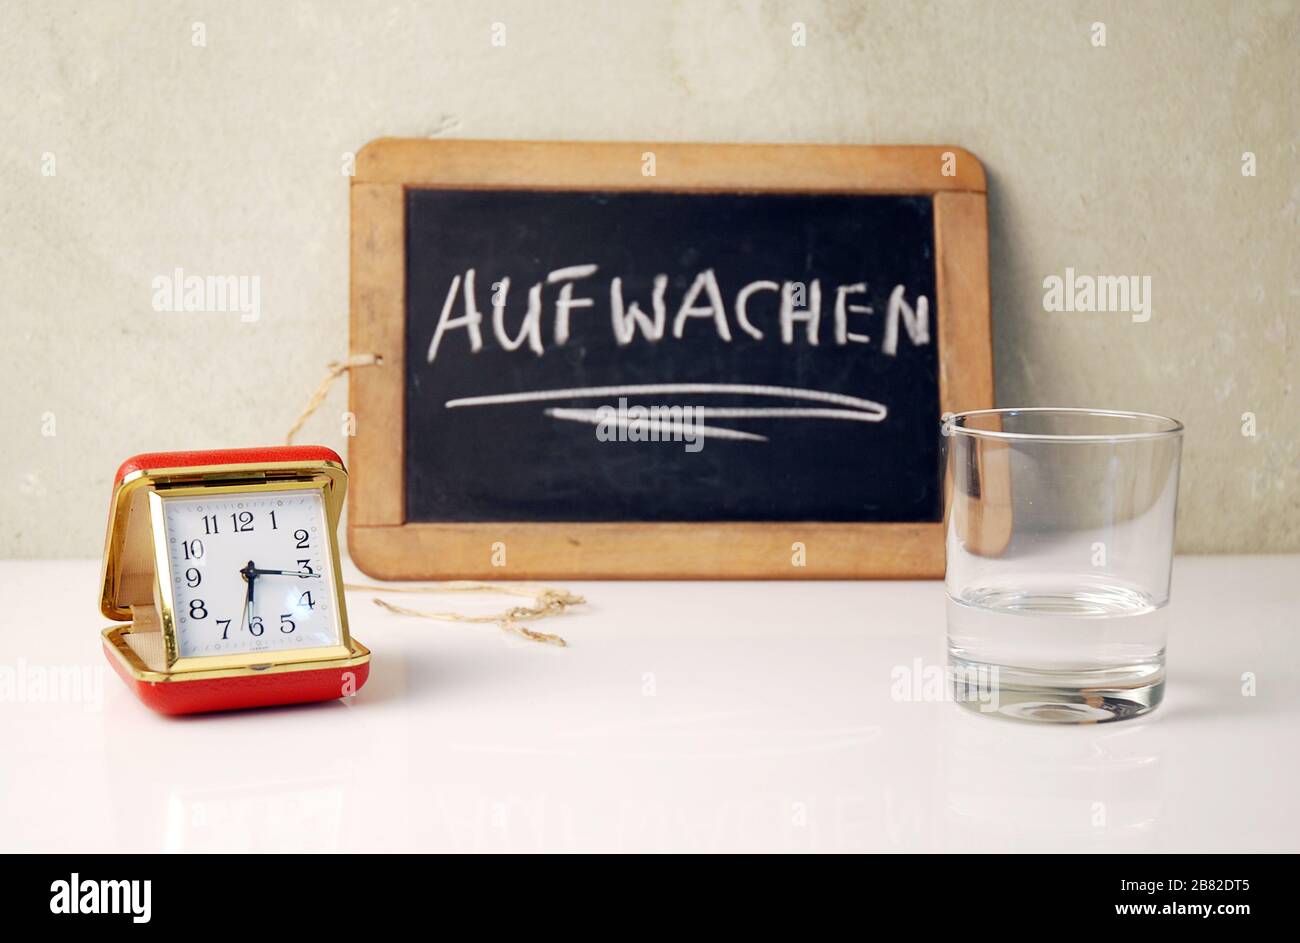 Viejo temporizador con agua y una pizarra witten en alemán Aufwachen, en inglés  despertar Fotografía de stock - Alamy